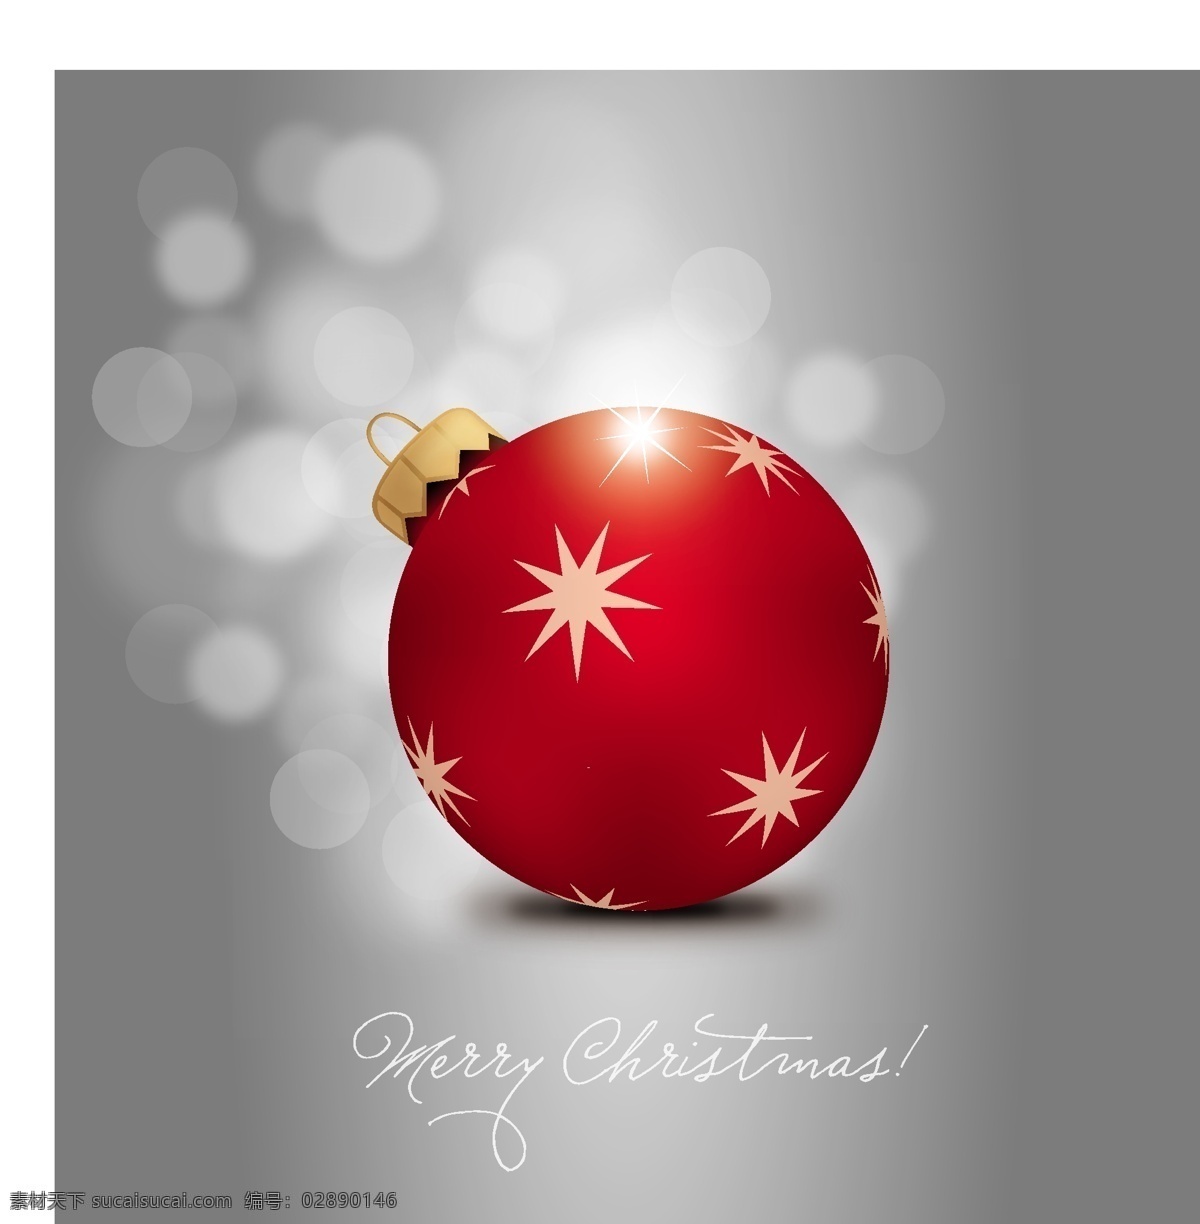 矢量 精美 高光 圣诞 吊球 璀璨 华丽 矢量素材 星星 绚丽 节日素材 其他节日